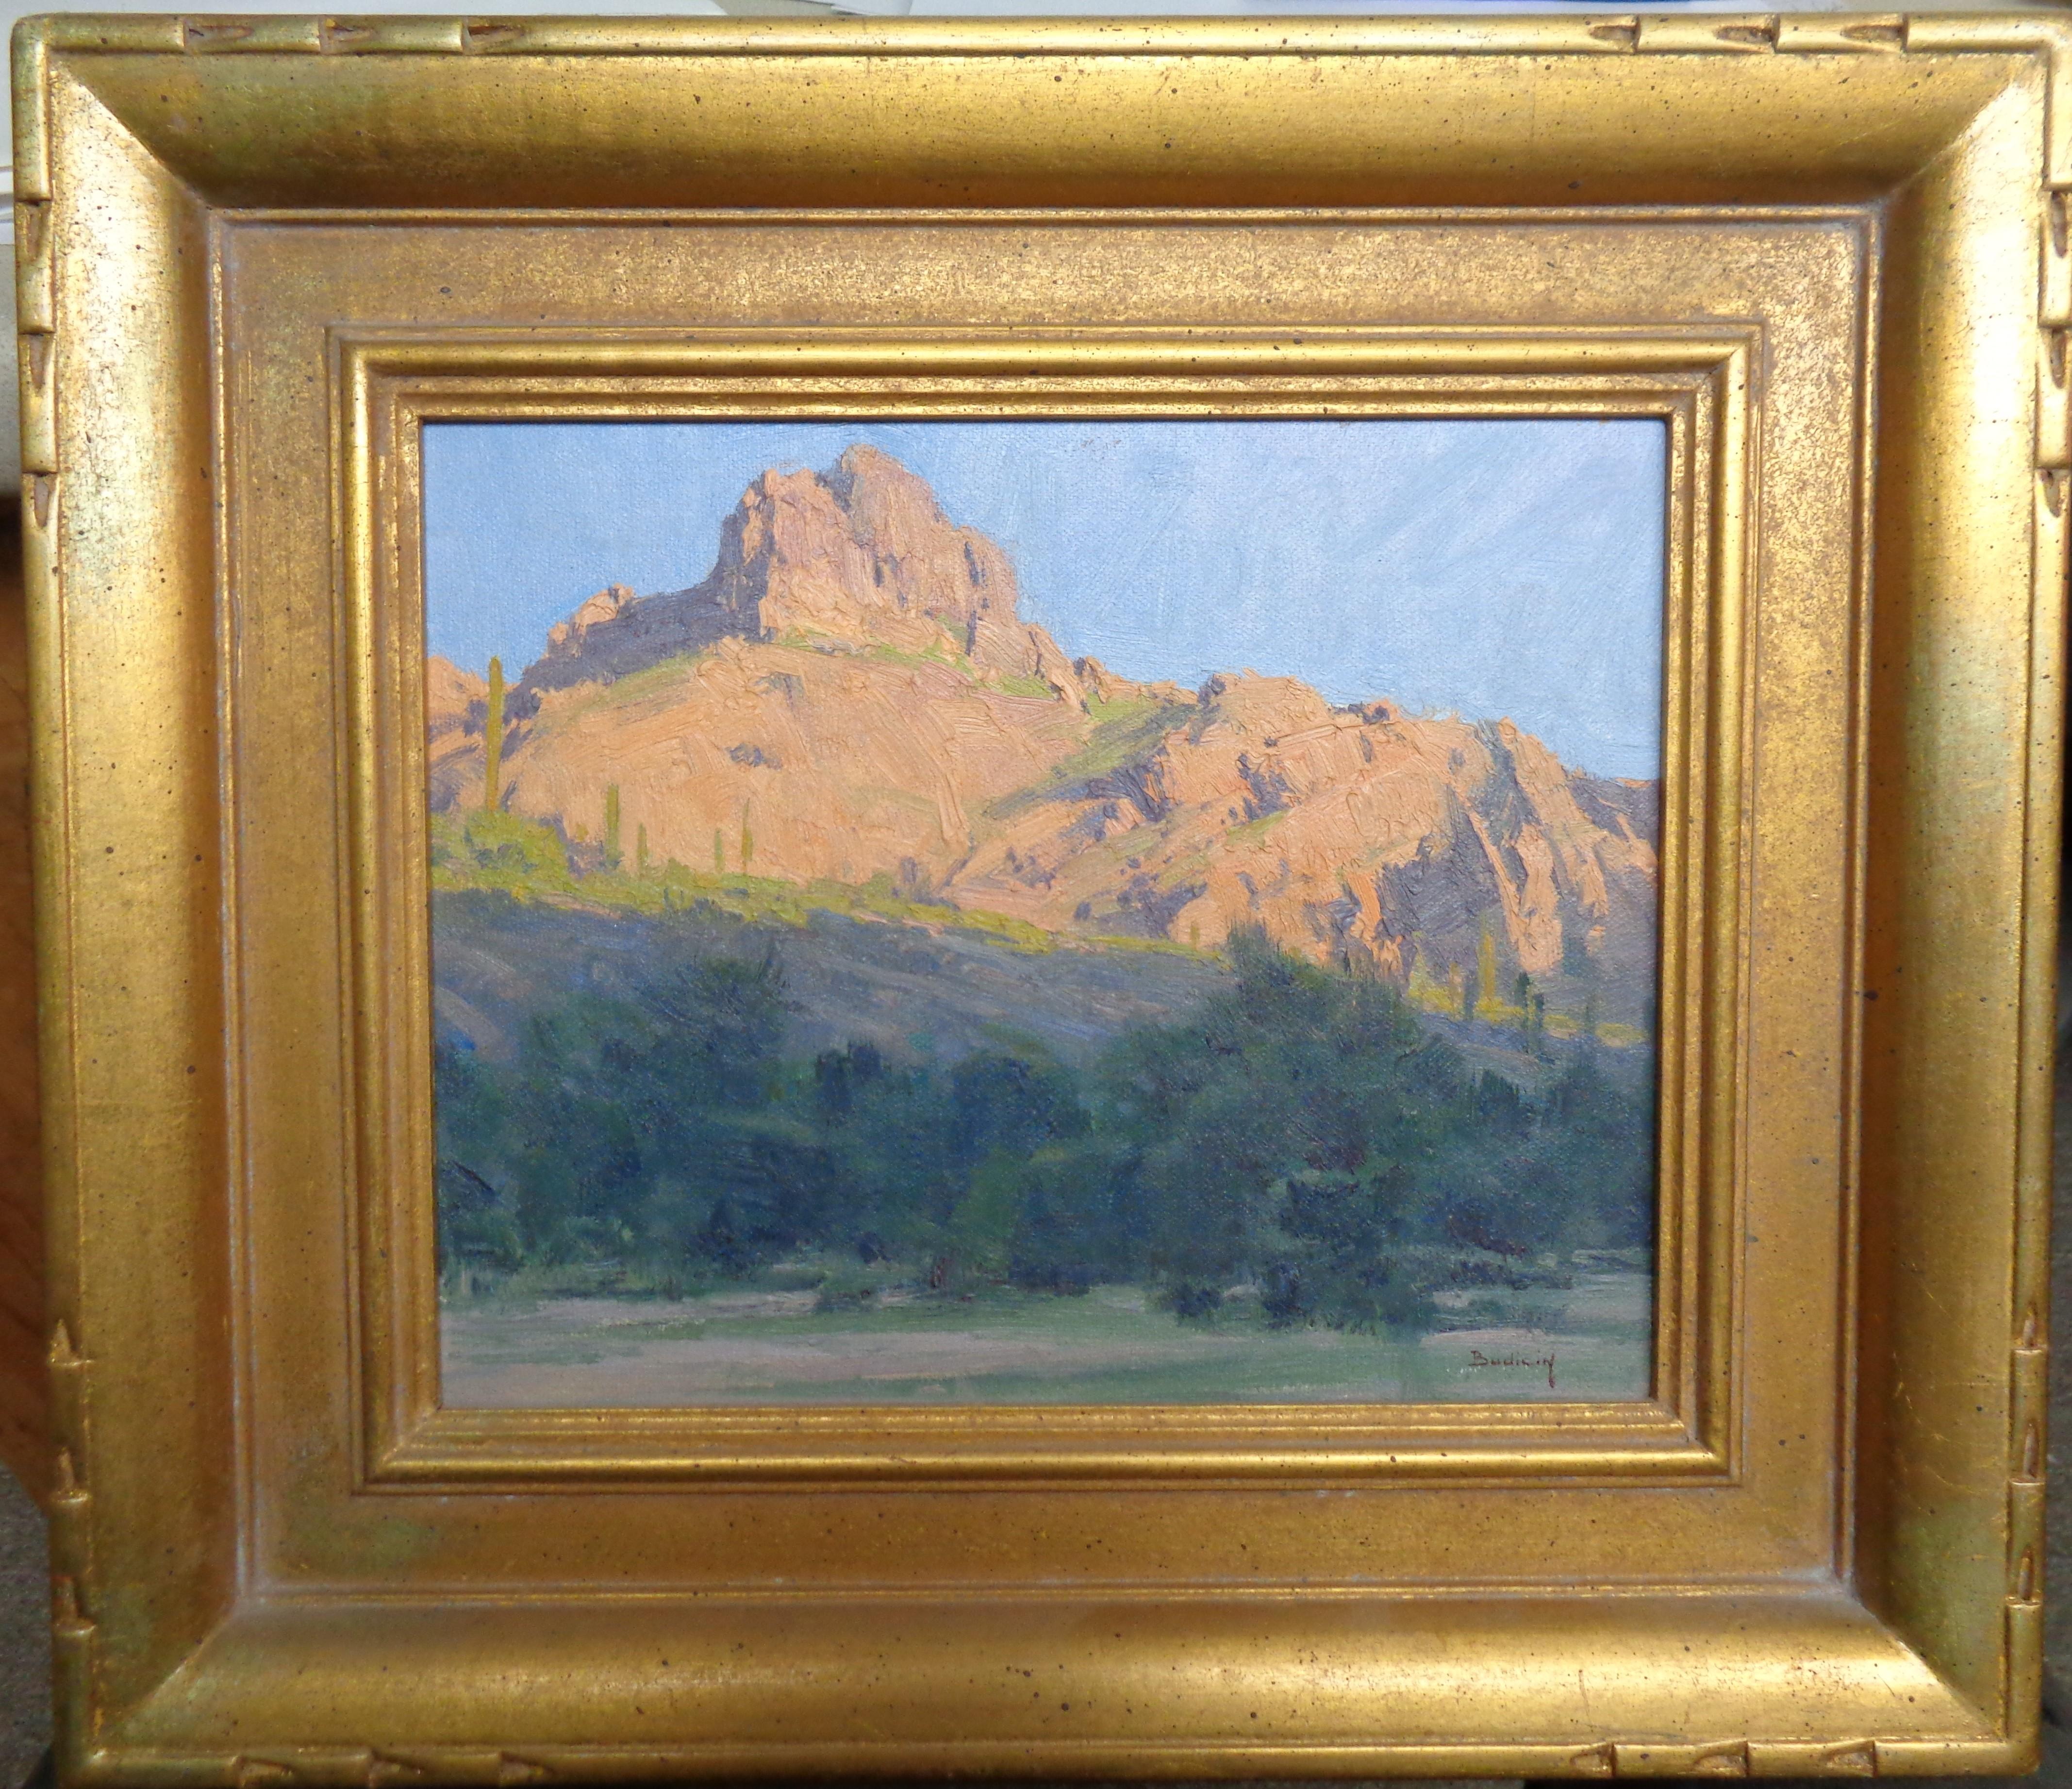 In der Schlucht
Öl/Leinwand auf Platte aufgezogen
Bild 8 x 10
2003 vom Künstler erworben. Dies ist ein schönes Pleinair-Gemälde, das in Scottsdale am Bulldog Canyon entstanden ist. Dies ist eines von zwei Budicin-Gemälden, die ich hier zum Kauf